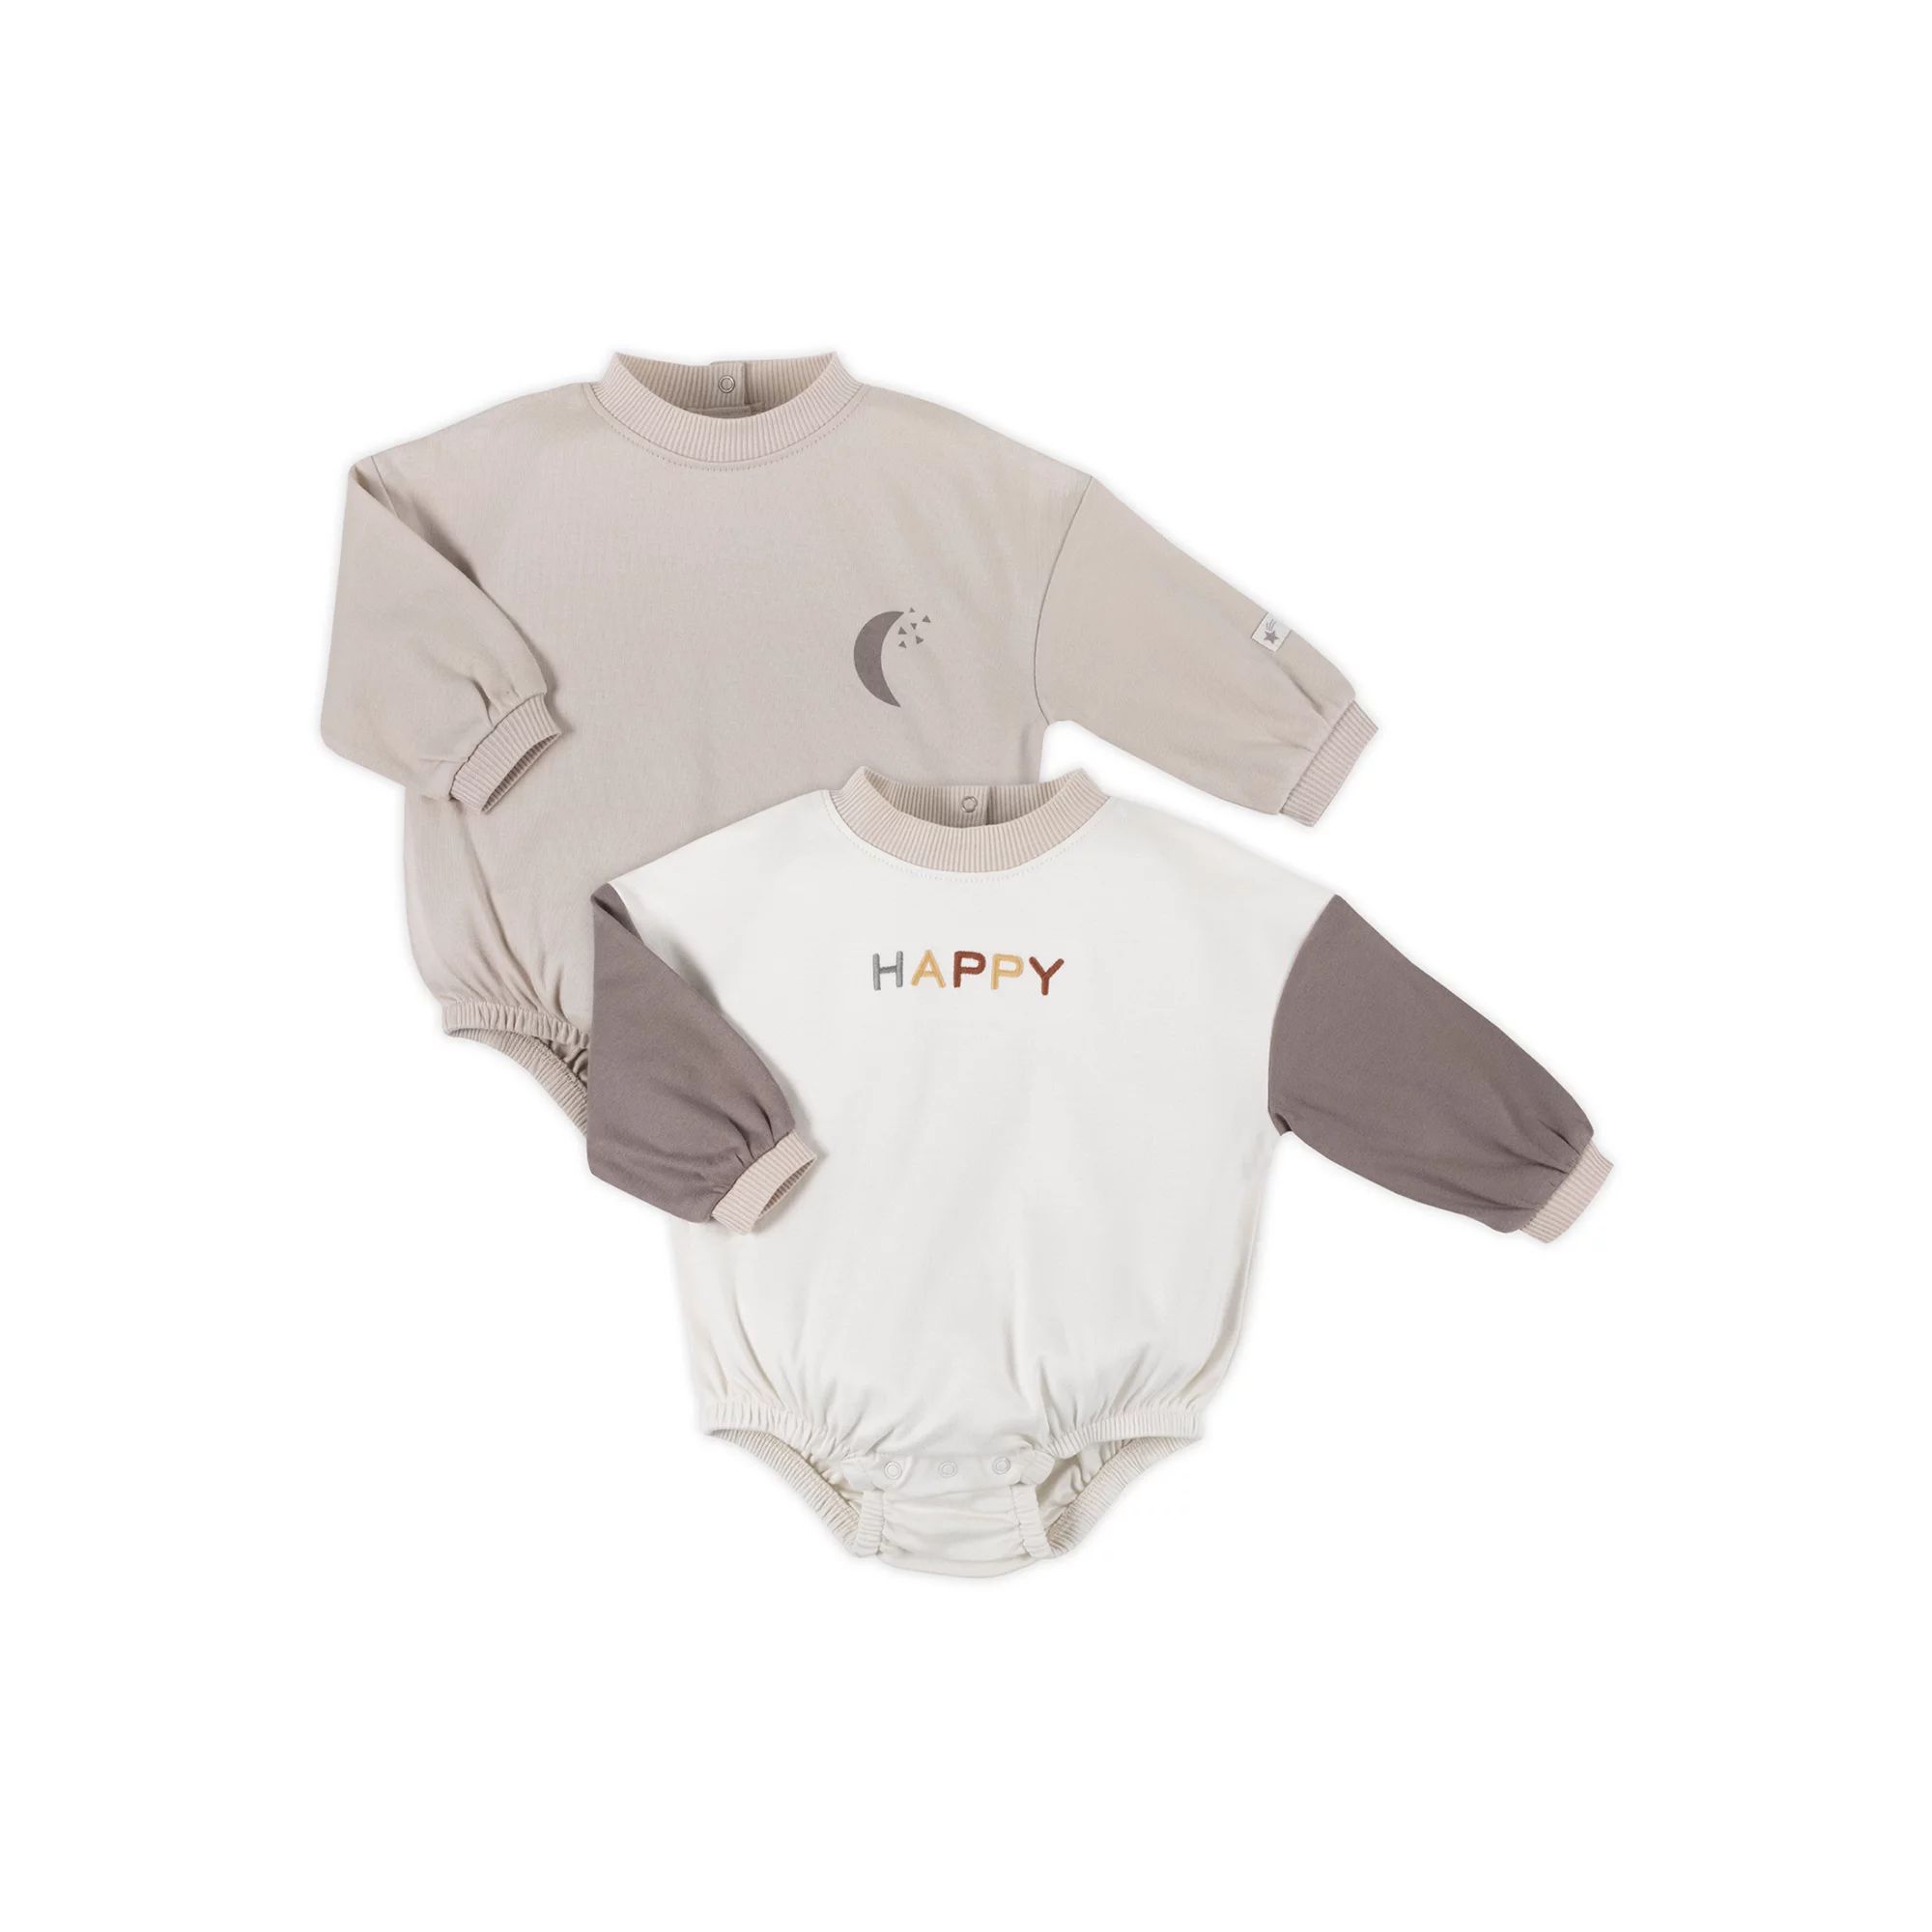 Little Star Organic Baby Unisex 2Pk Sweatshirt Rompers, Size Newborn-12 Months | Walmart (US)